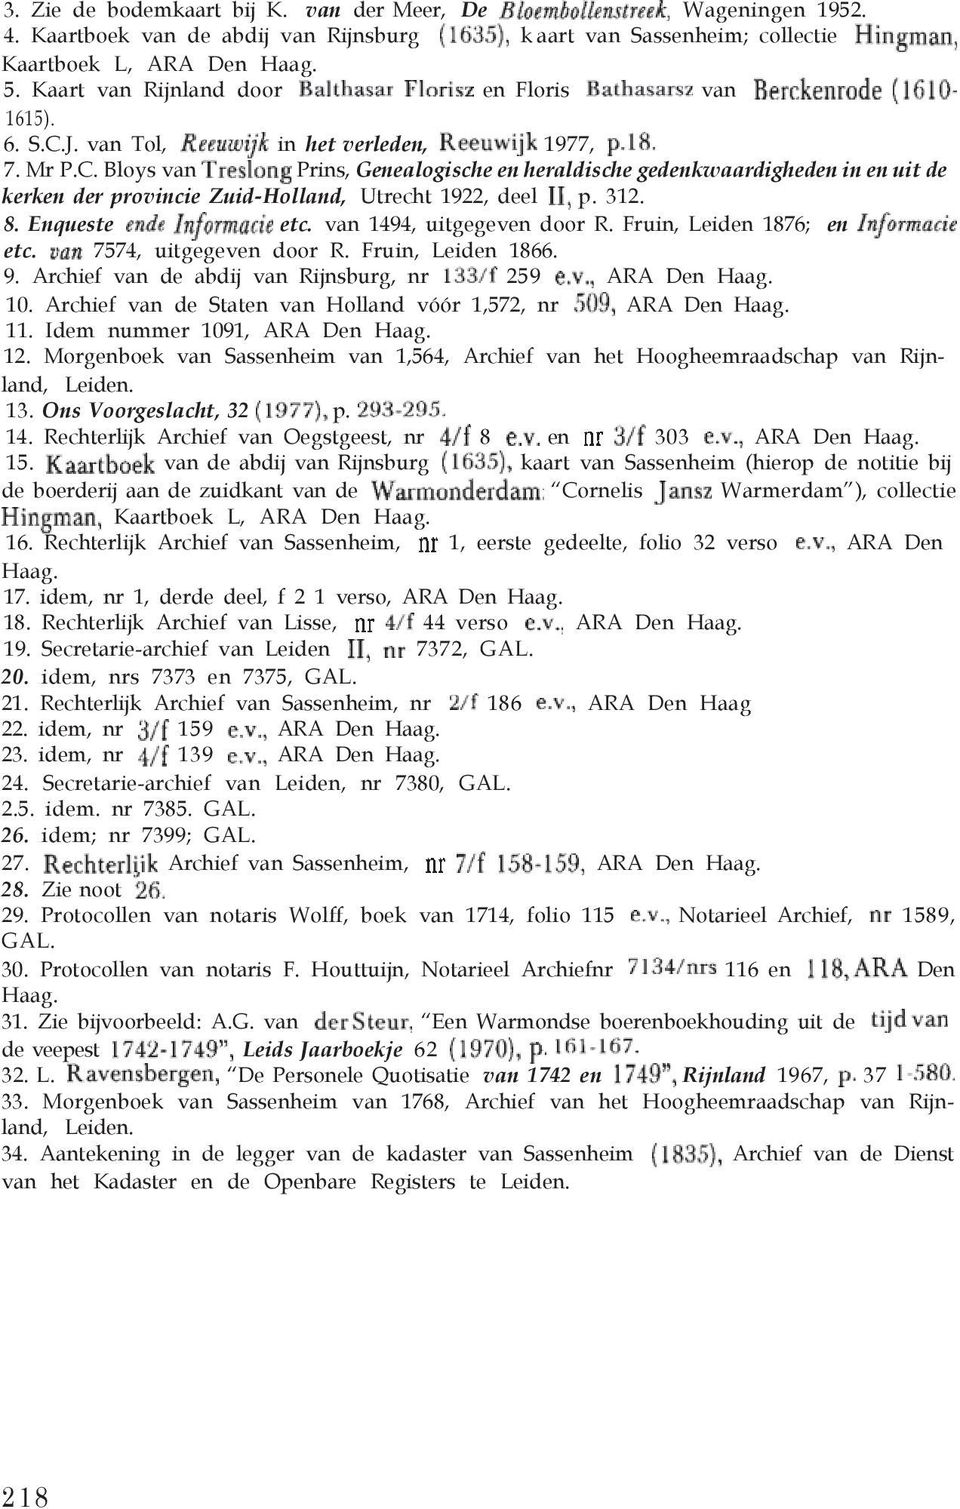 312. 8. Enqueste etc. van 1494, uitgegeven door R. Fruin, Leiden 1876; en etc. 7574, uitgegeven door R. Fruin, Leiden 1866. 9. Archief van de abdij van Rijnsburg, nr 259 ARA Den Haag. 10.